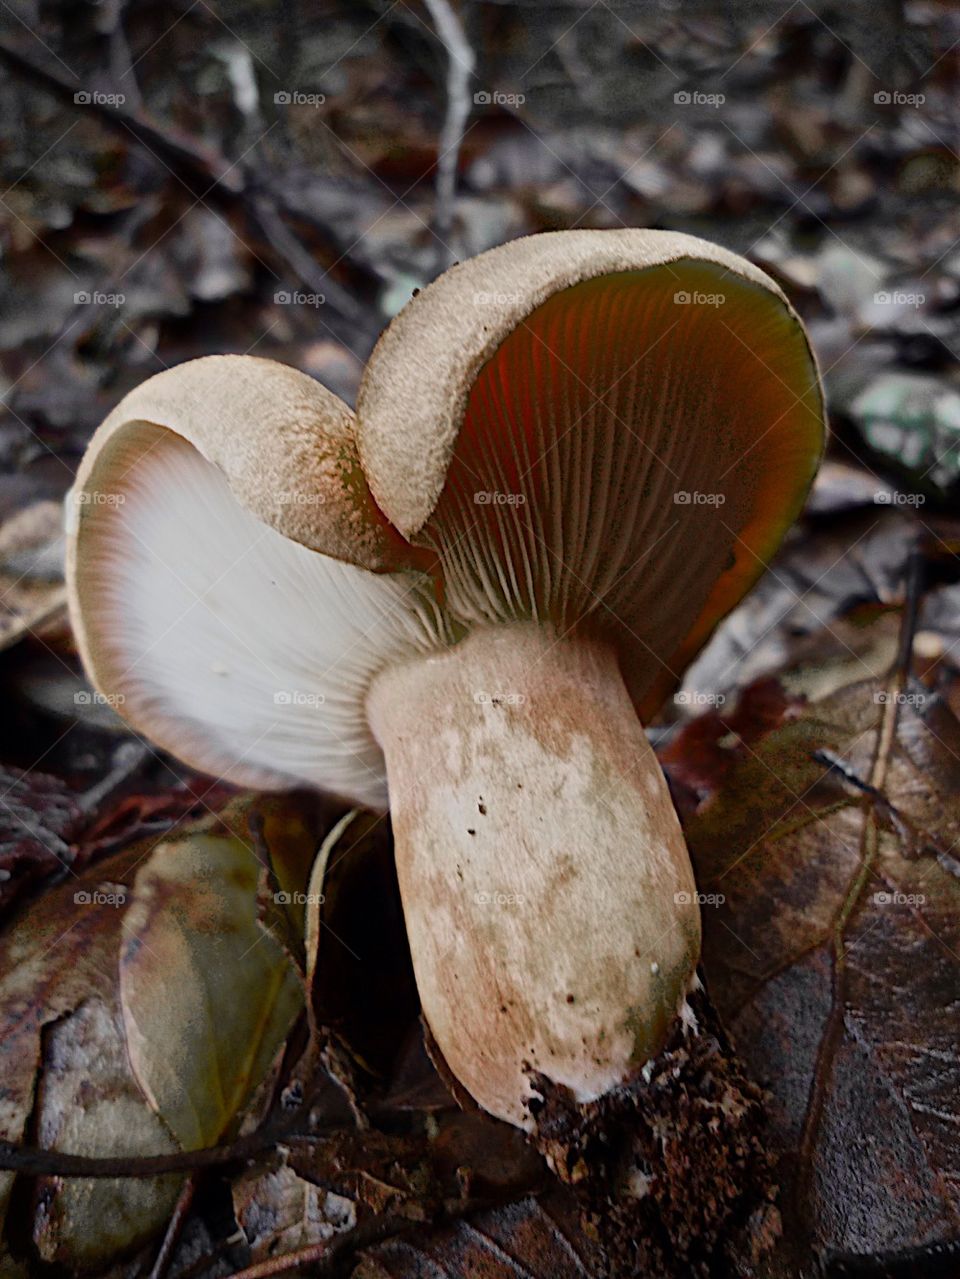 Peculiar mushroom